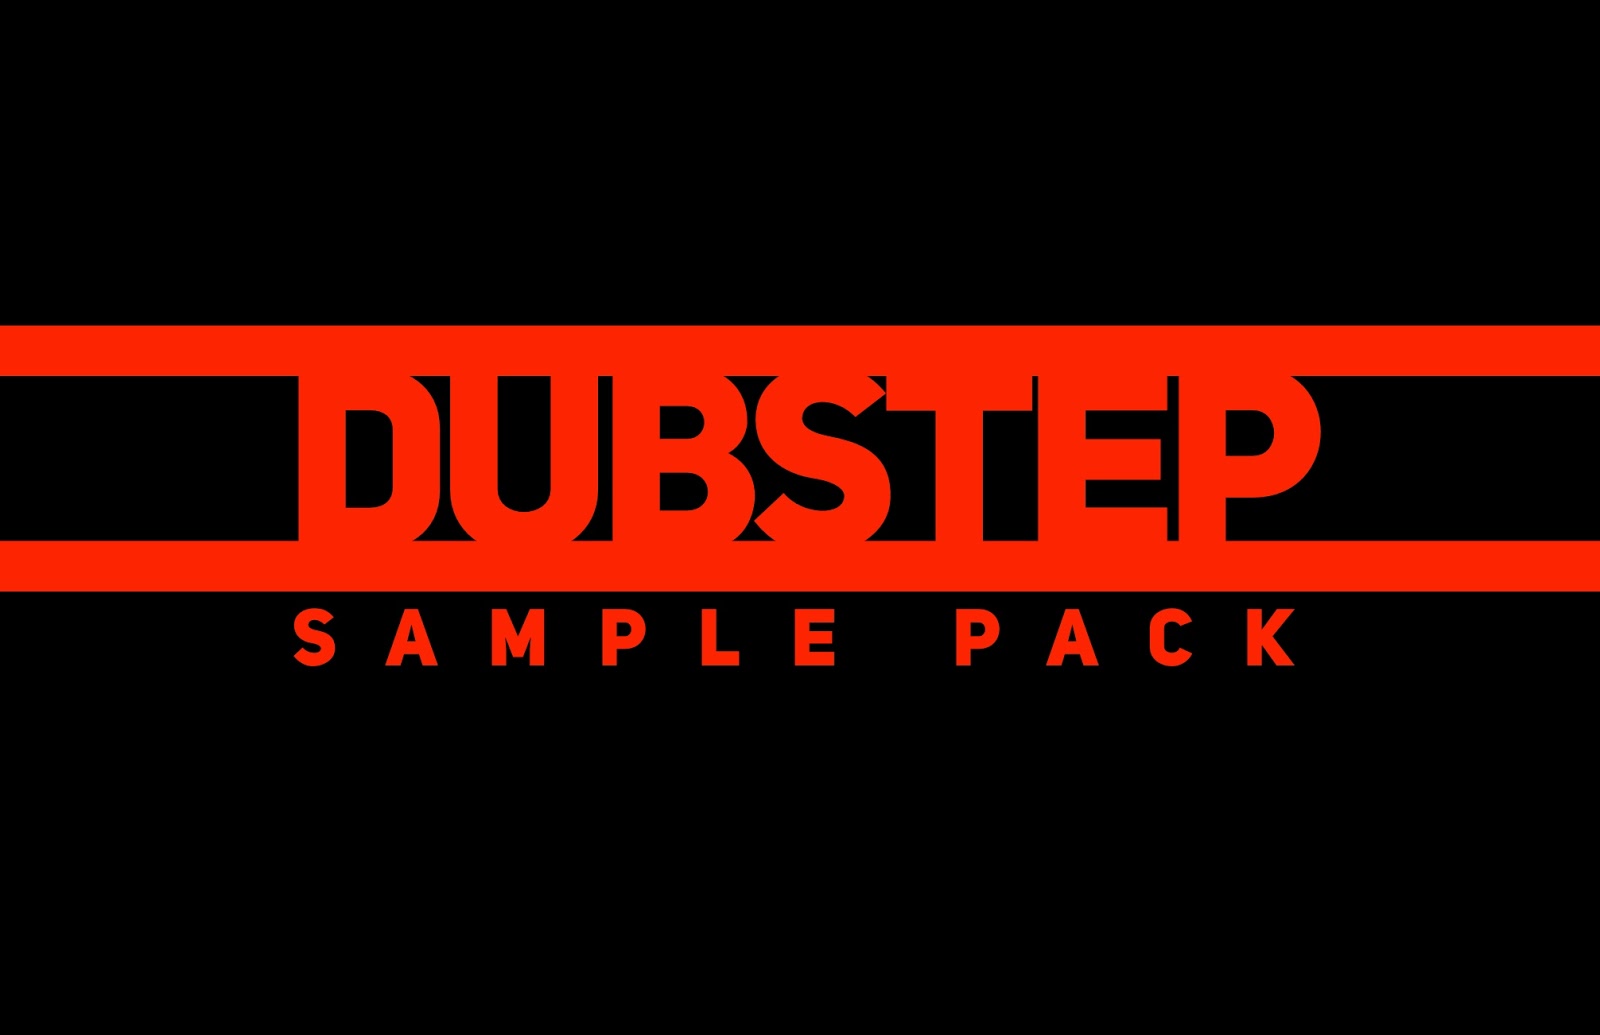 Dubstep Sample Pack. Breakbeat Sample Pack. Dubstep atmosphere Sample Pack. Dubstep bass